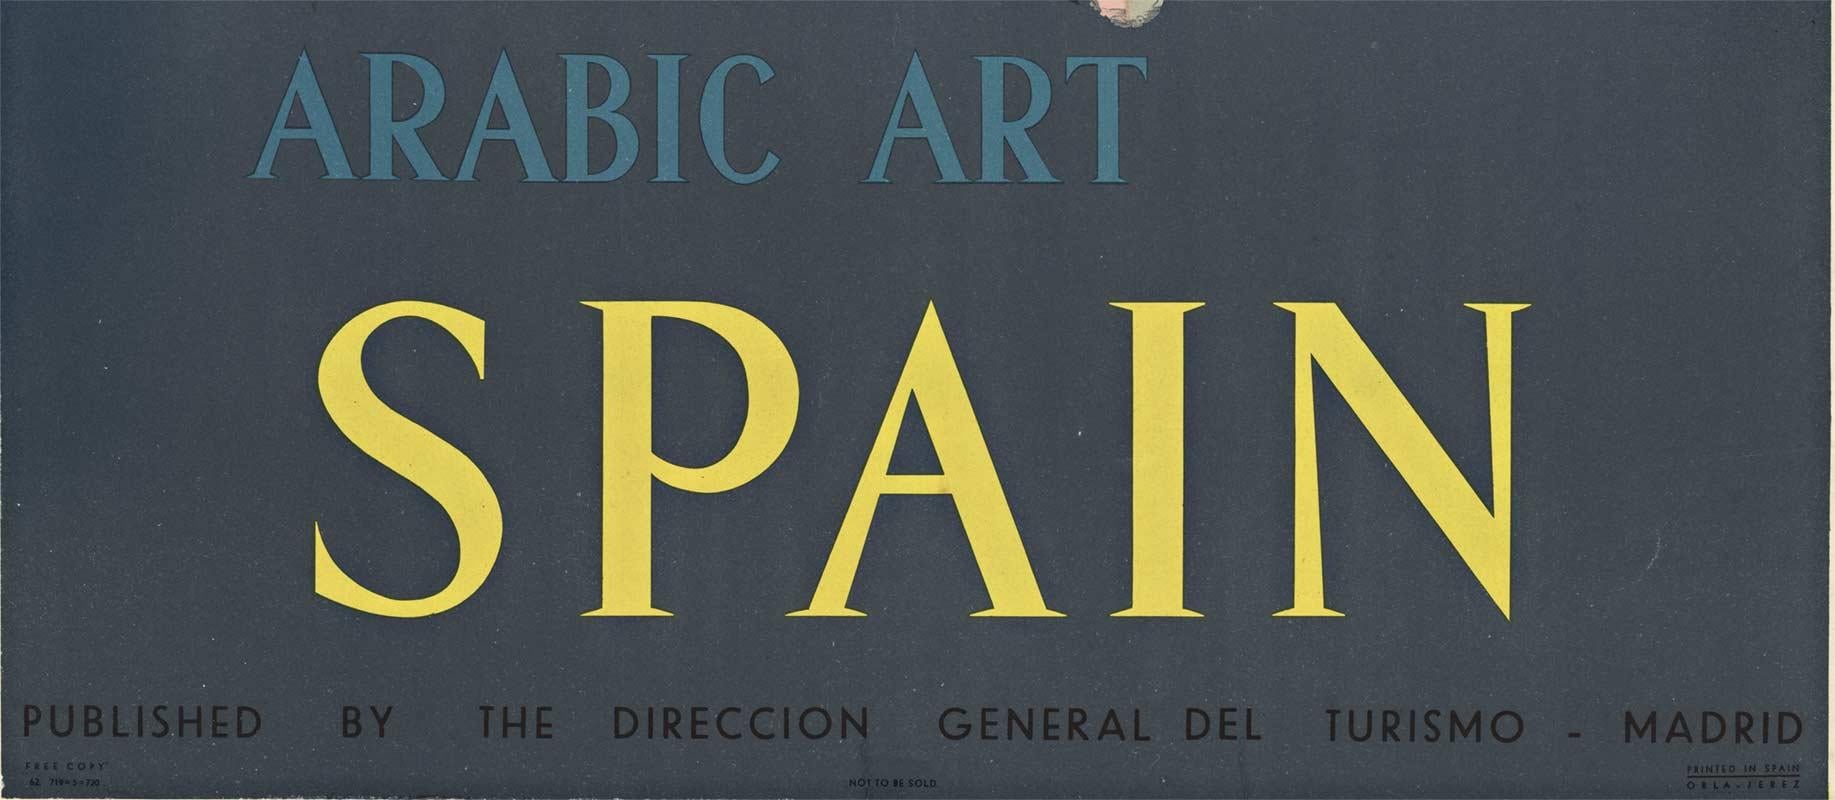 Affiche de voyage vintage d'origine Arabic Art - Espagne - Print de José Ortega